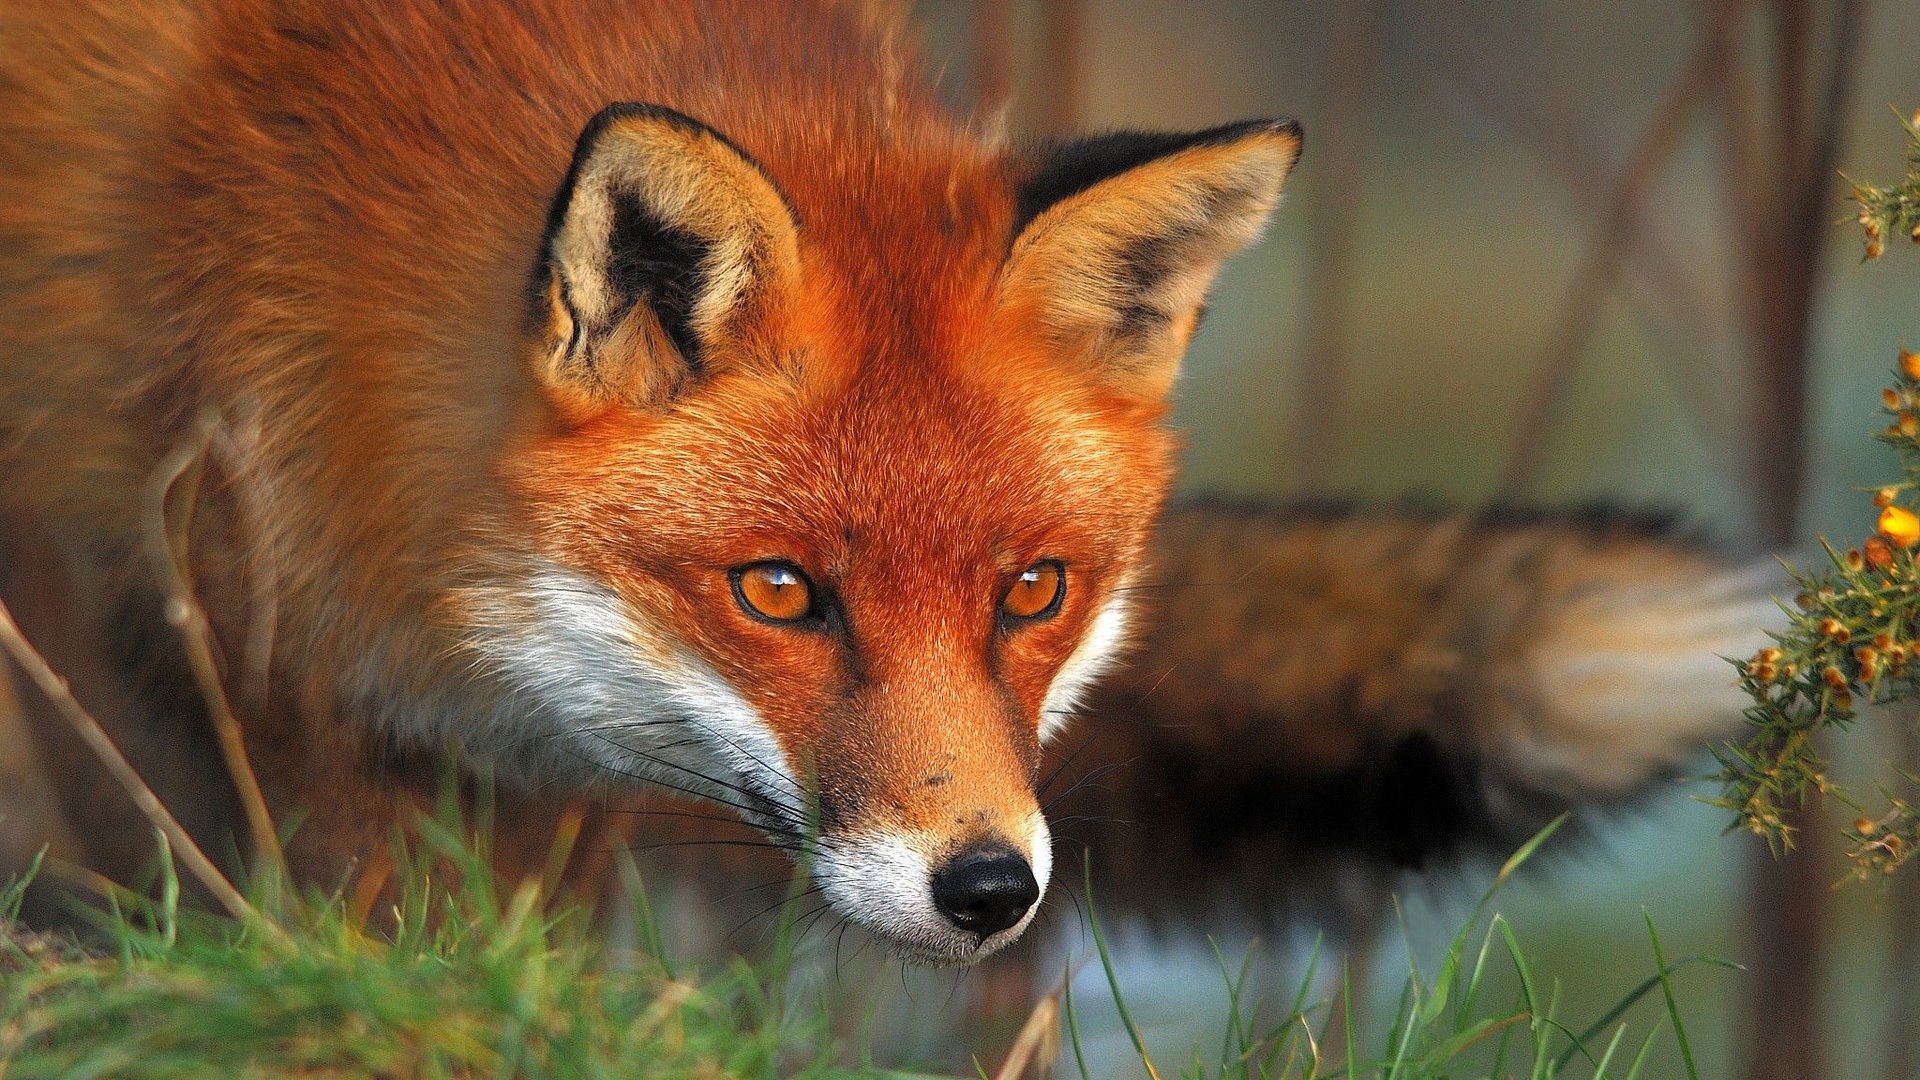 Fox Red